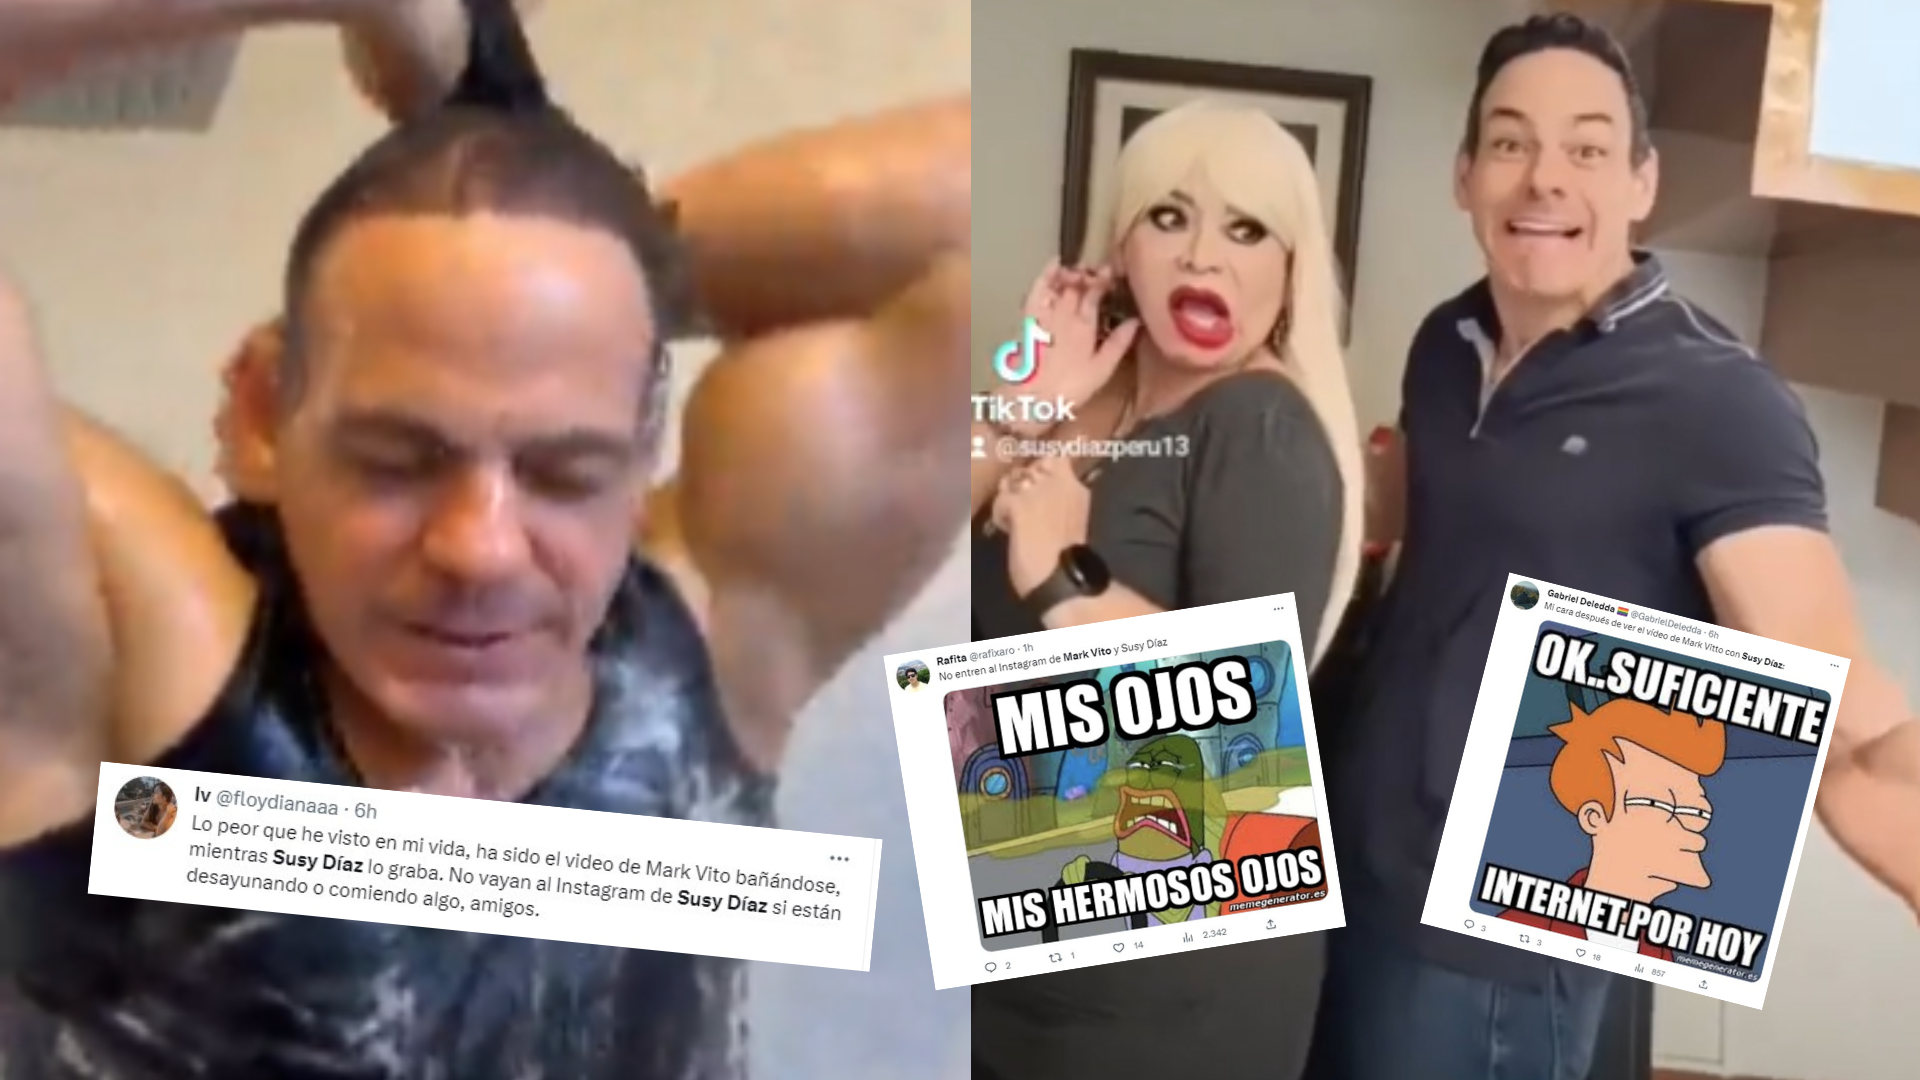 Memes y reacciones en redes por los videos de Mark Vito con Susy Díaz: “Suficiente internet por hoy”